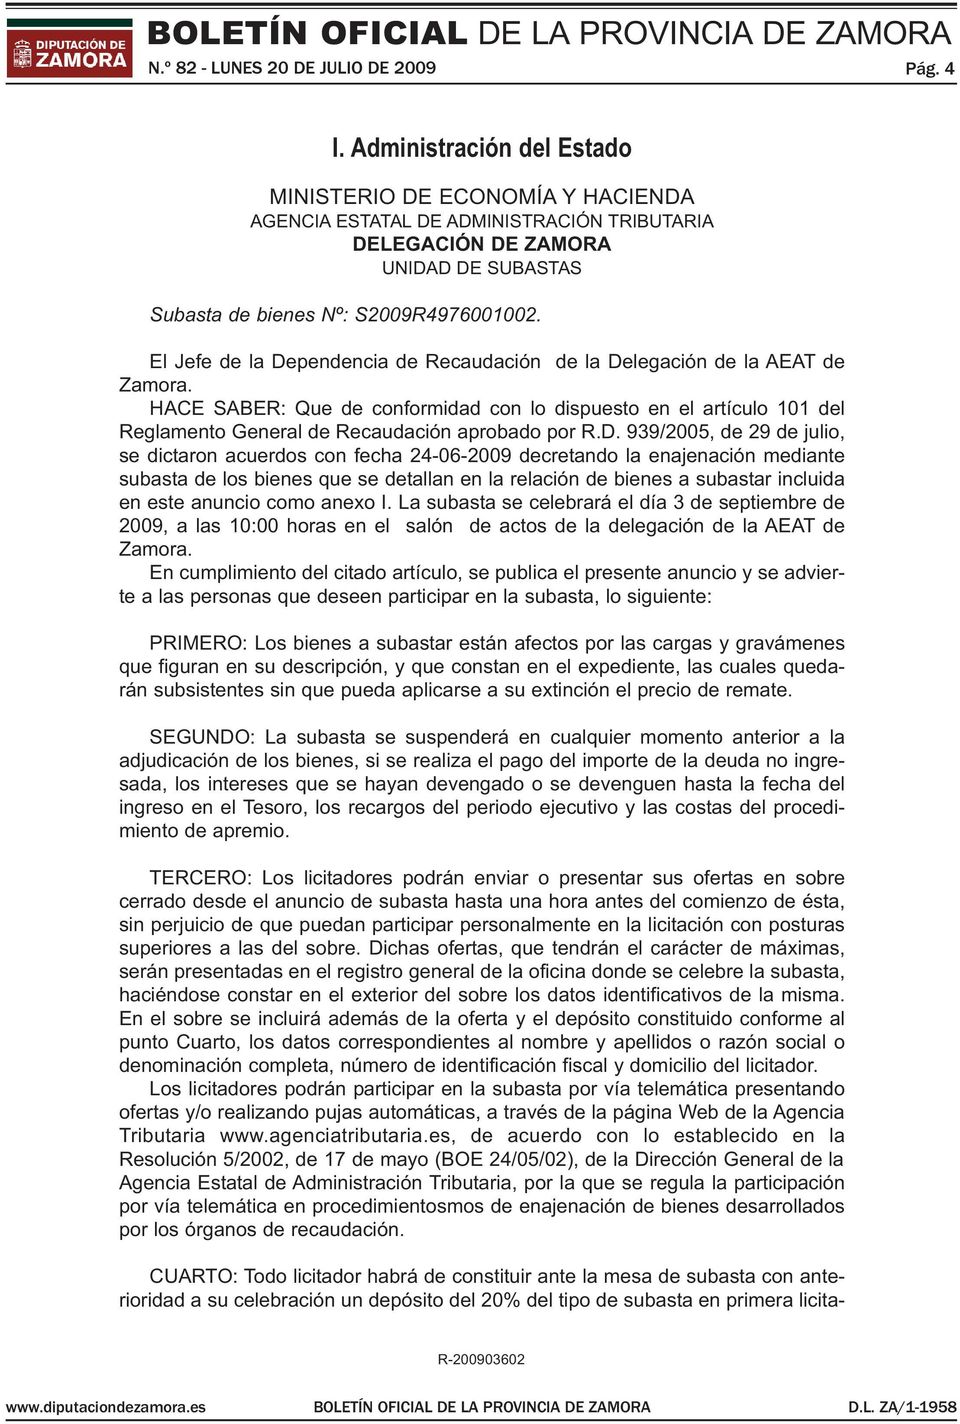 El Jefe de la Dependencia de Recaudación de la Delegación de la AEAT de Zamora. HACE SABER: Que de conformidad con lo dispuesto en el artículo 101 del Reglamento General de Recaudación aprobado por R.